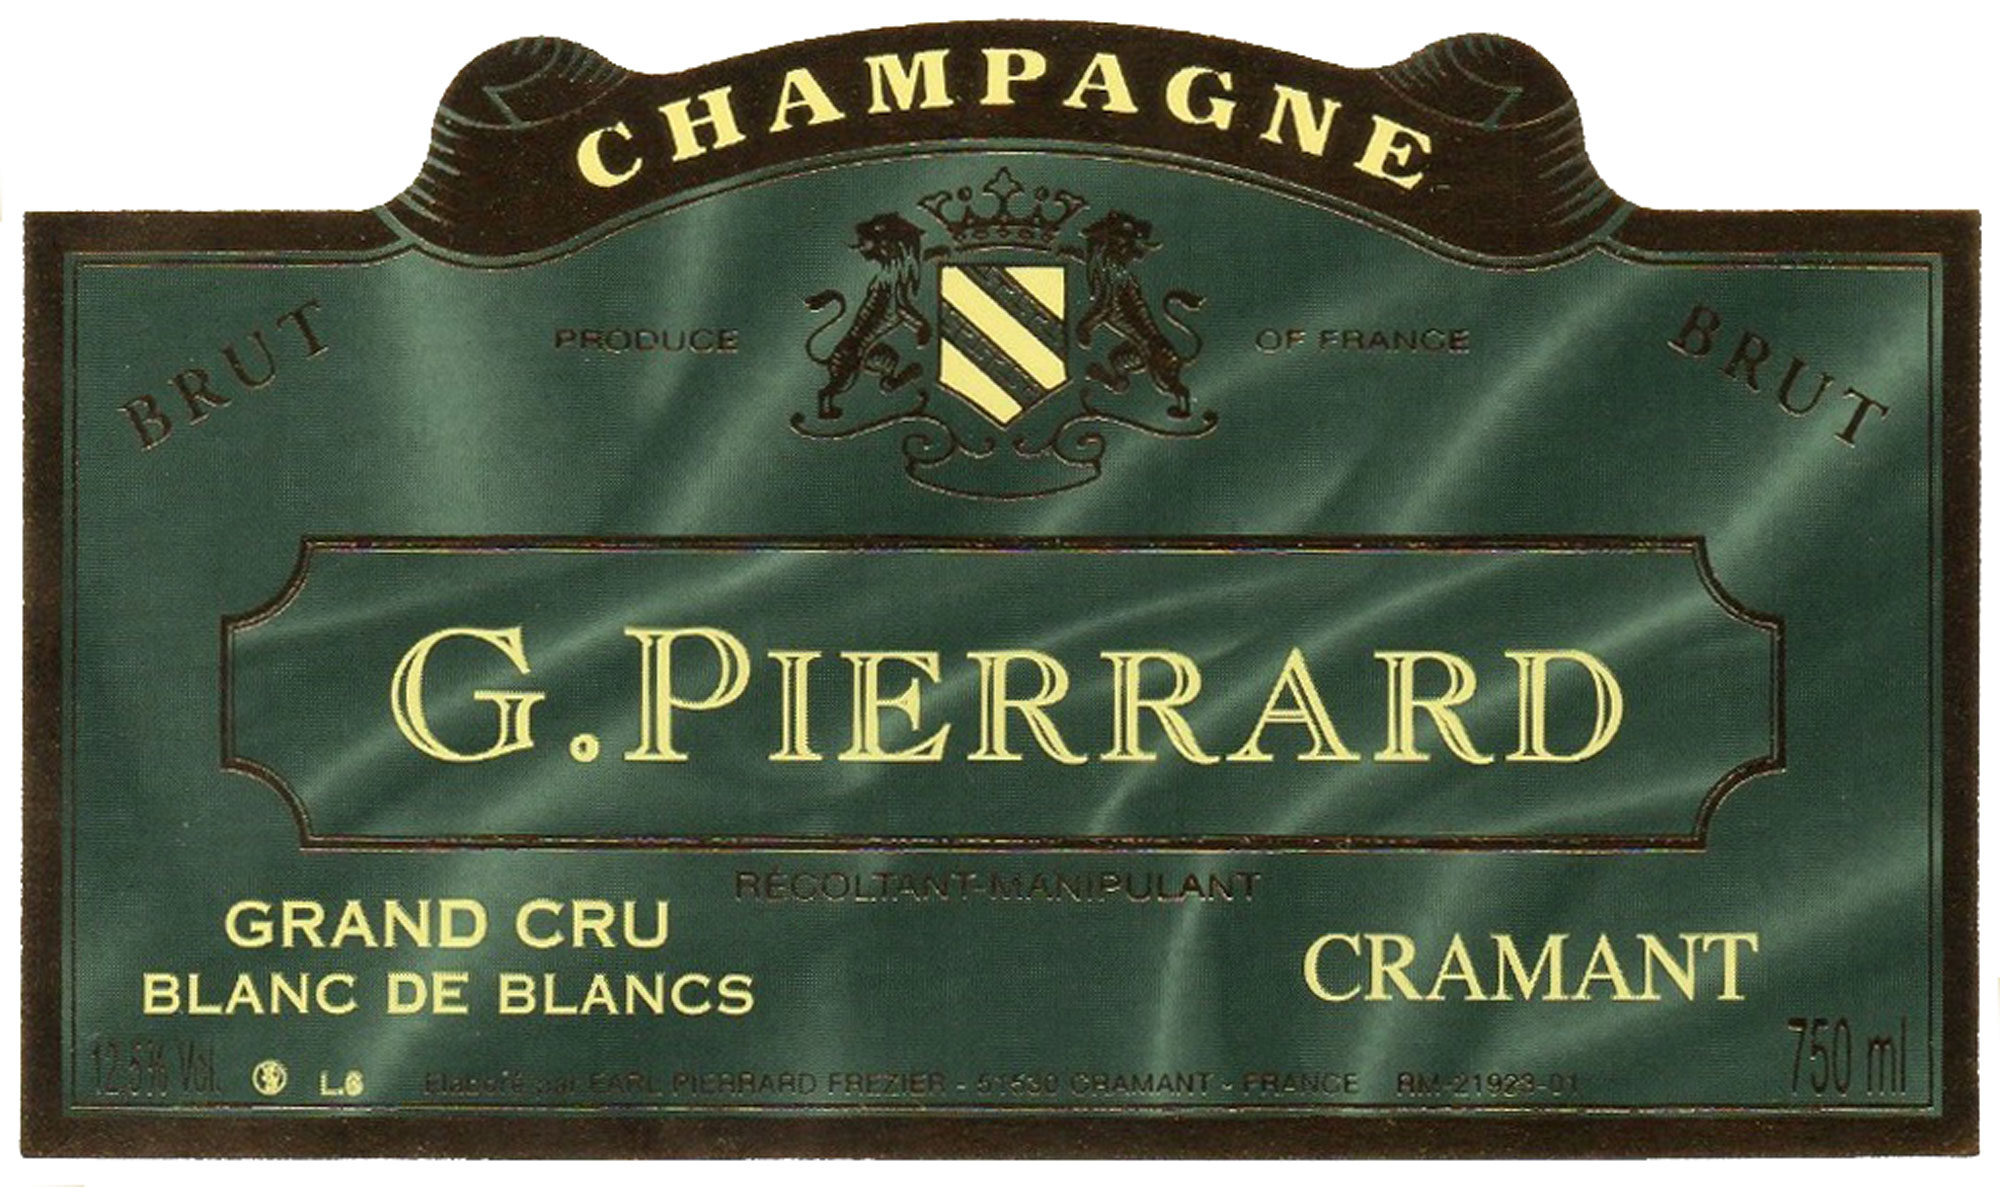 Champagne G. Pierrard